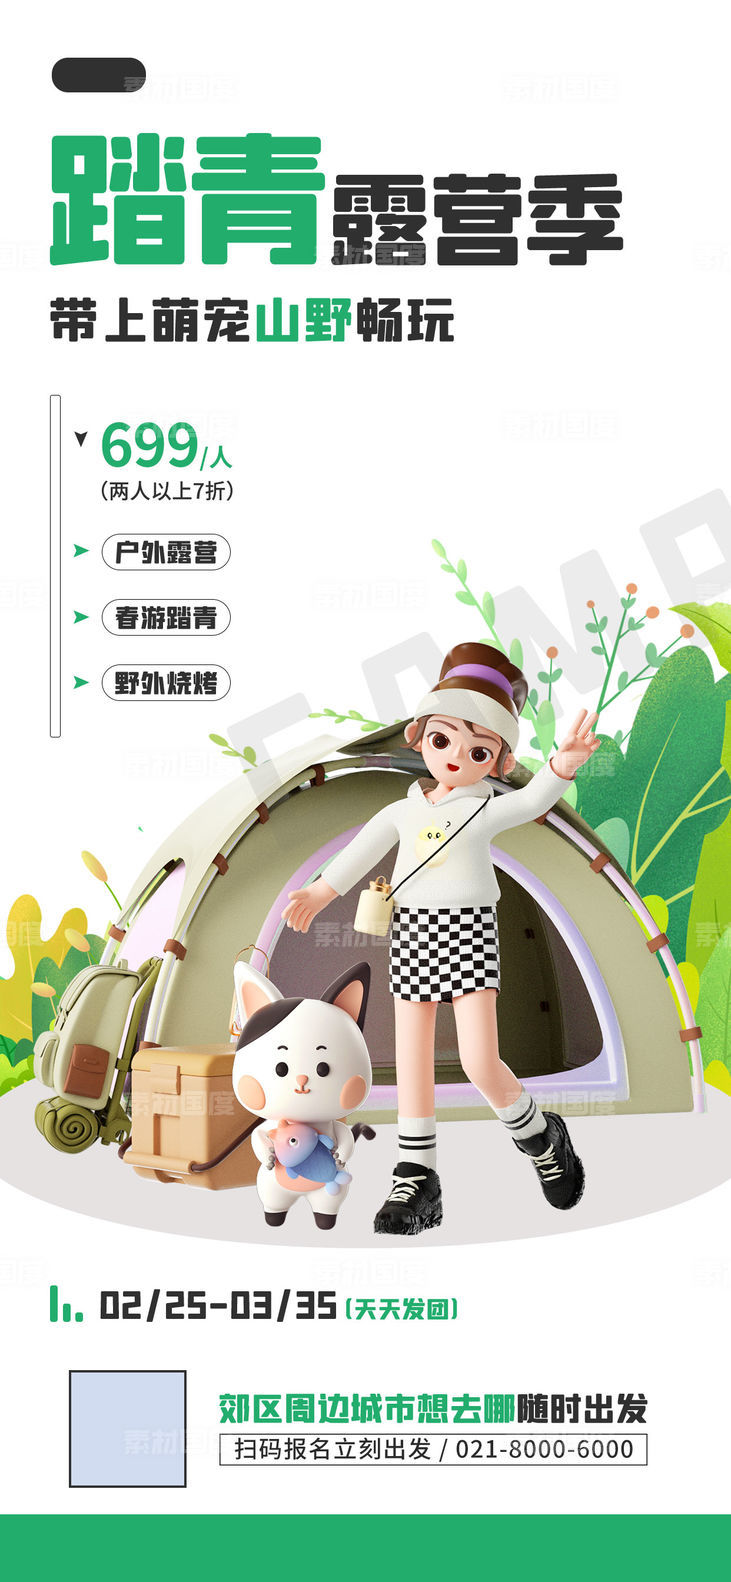 春游踏青活动促销宠物露营3D宣传海报